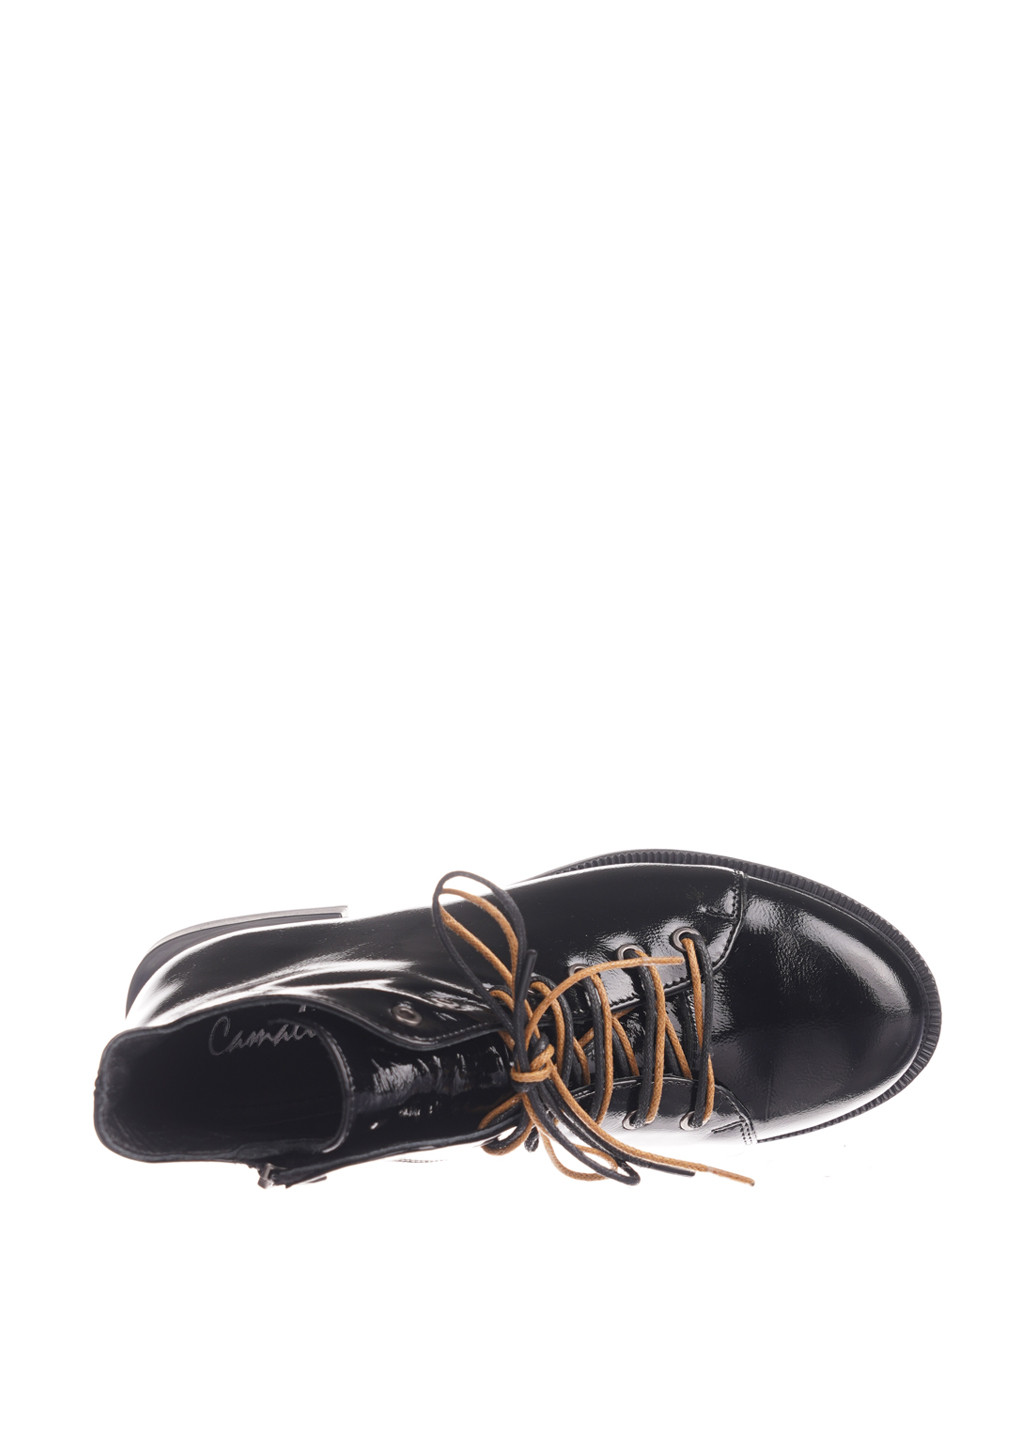 Осенние ботинки Camalini со шнуровкой, лаковые